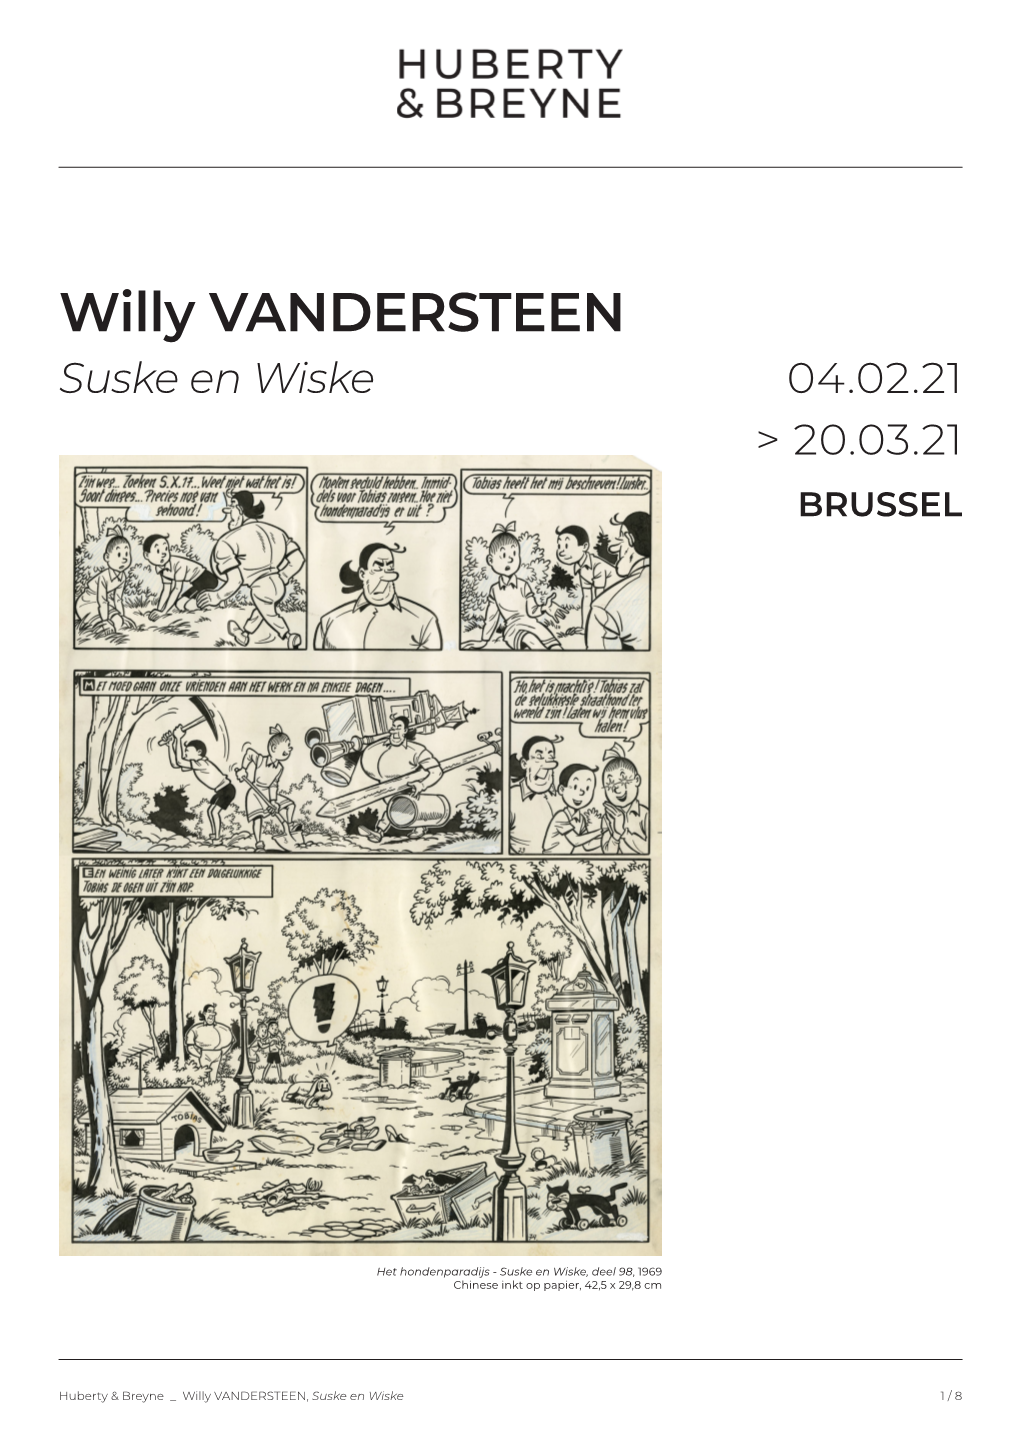 Willy VANDERSTEEN Suske En Wiske 04.02.21 > 20.03.21 BRUSSEL